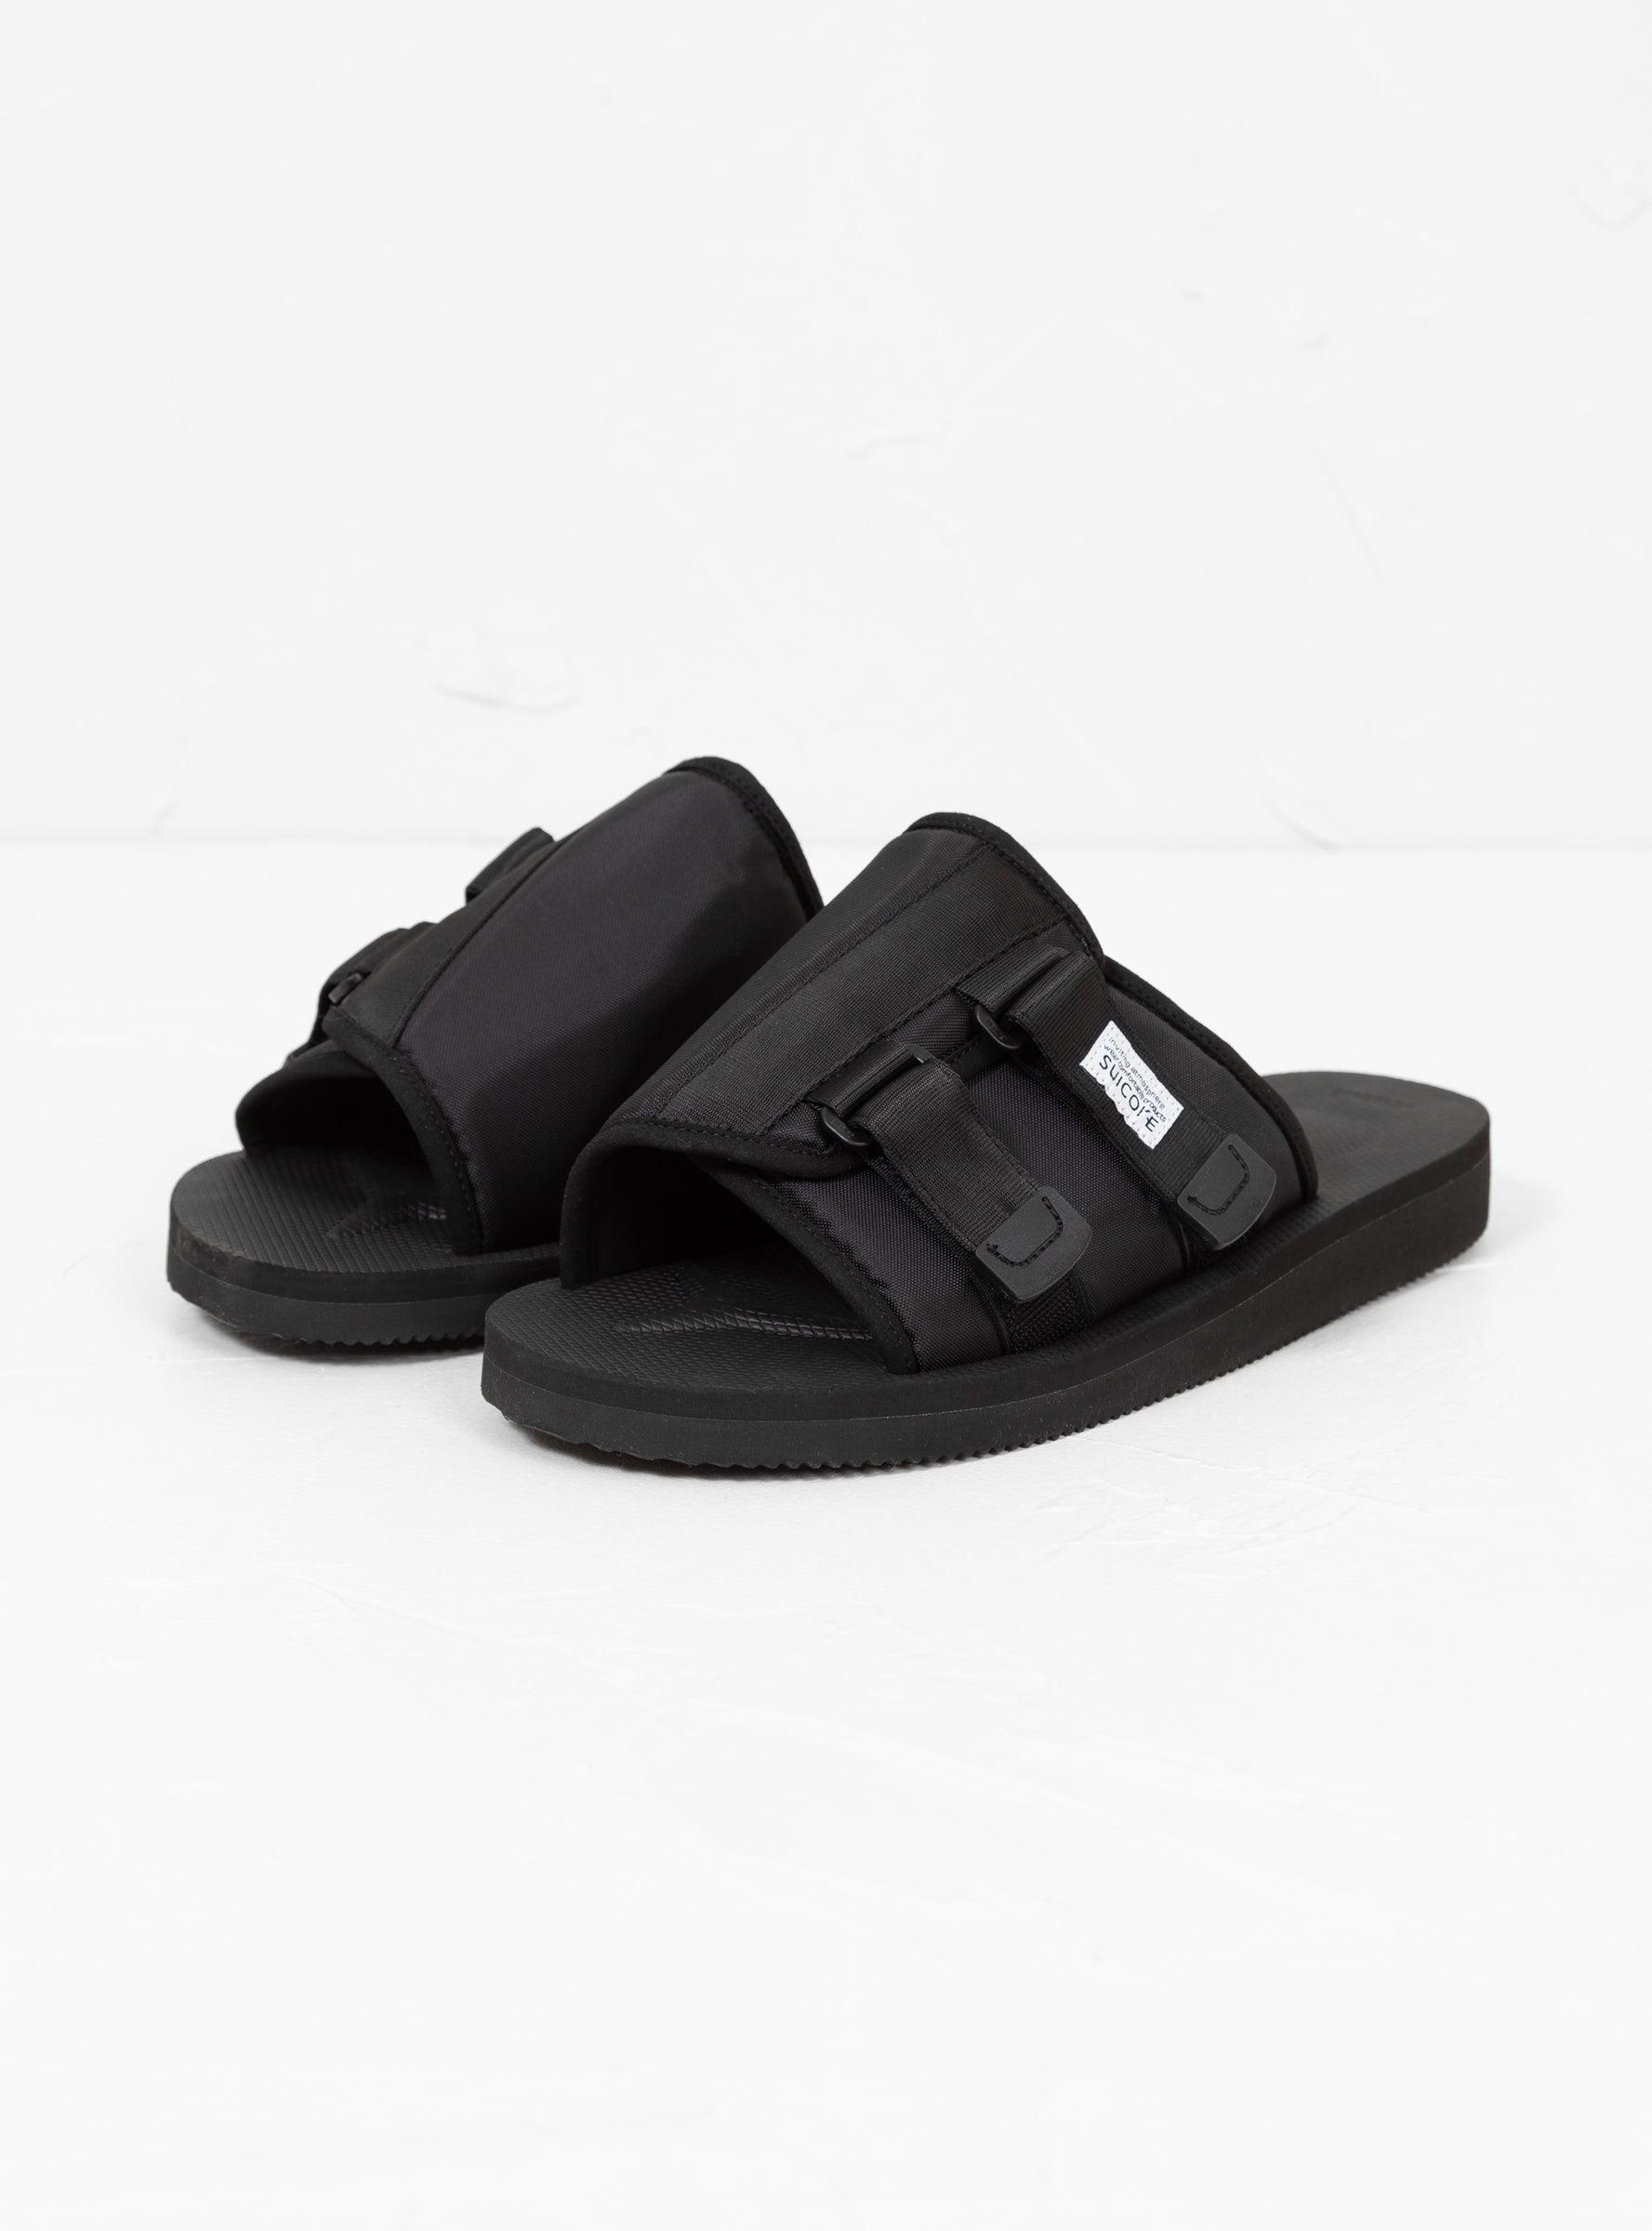 Suicoke Suicoke KAW-CAB Sandals Black - Size: UK 11